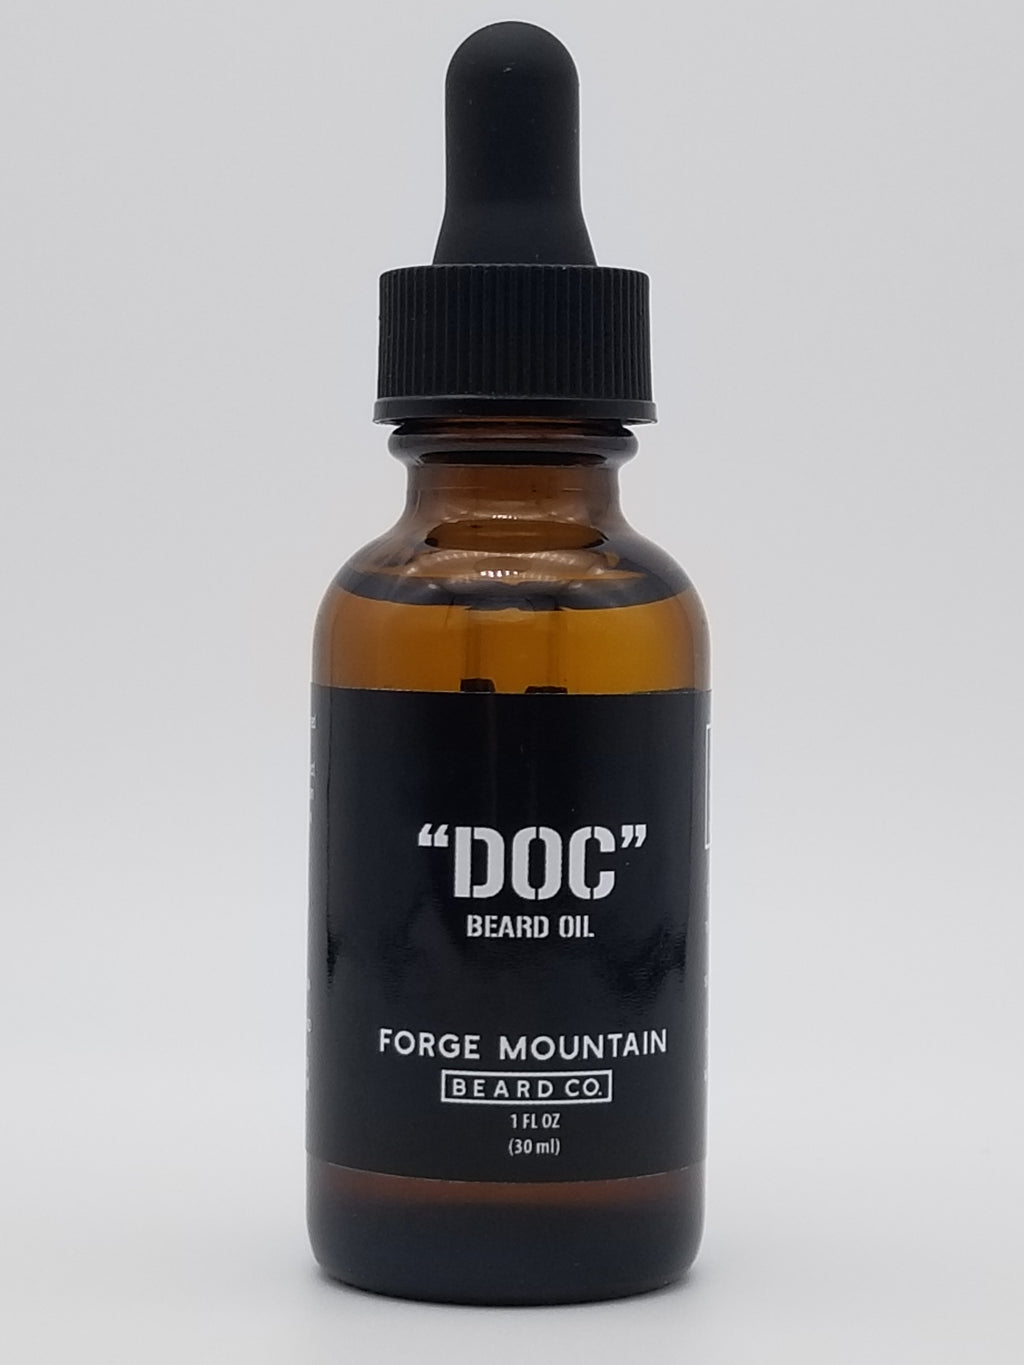 "DOC" Beard Oil